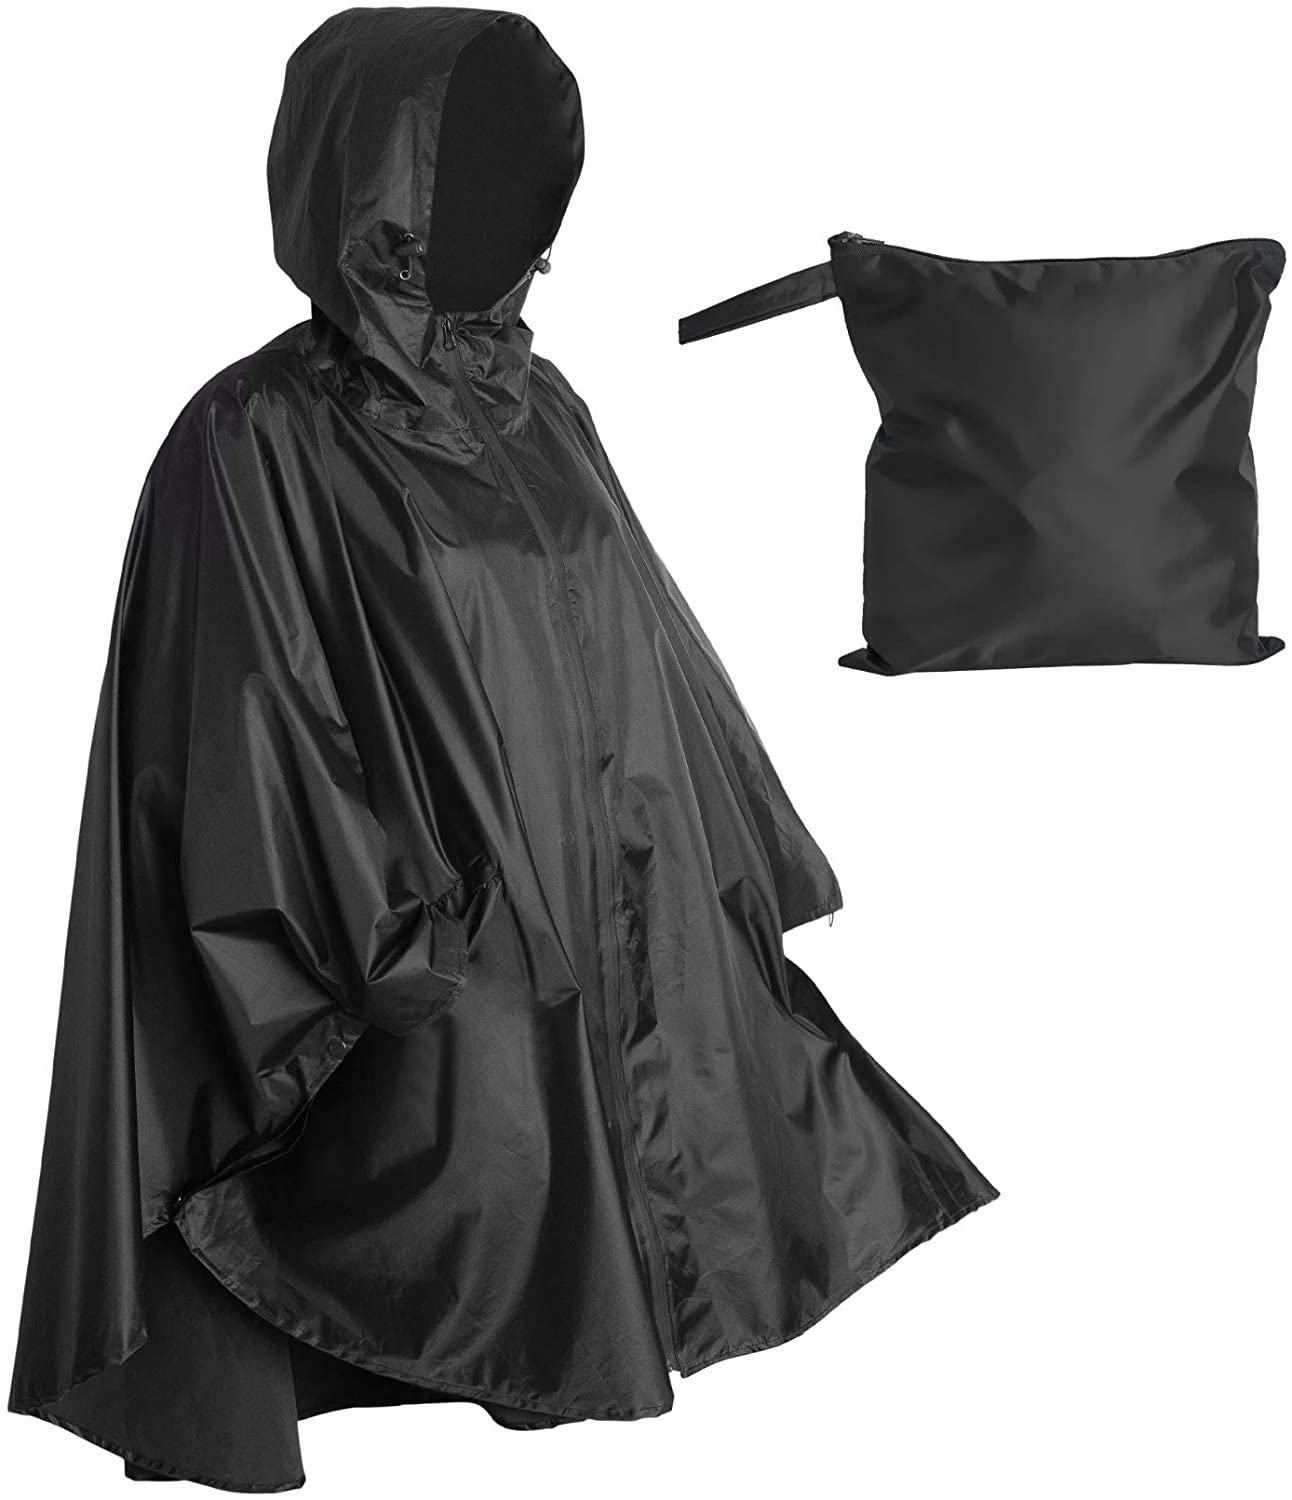 210T PVC 3000 mm waterproof camouflage rain coat poncho military raincoat